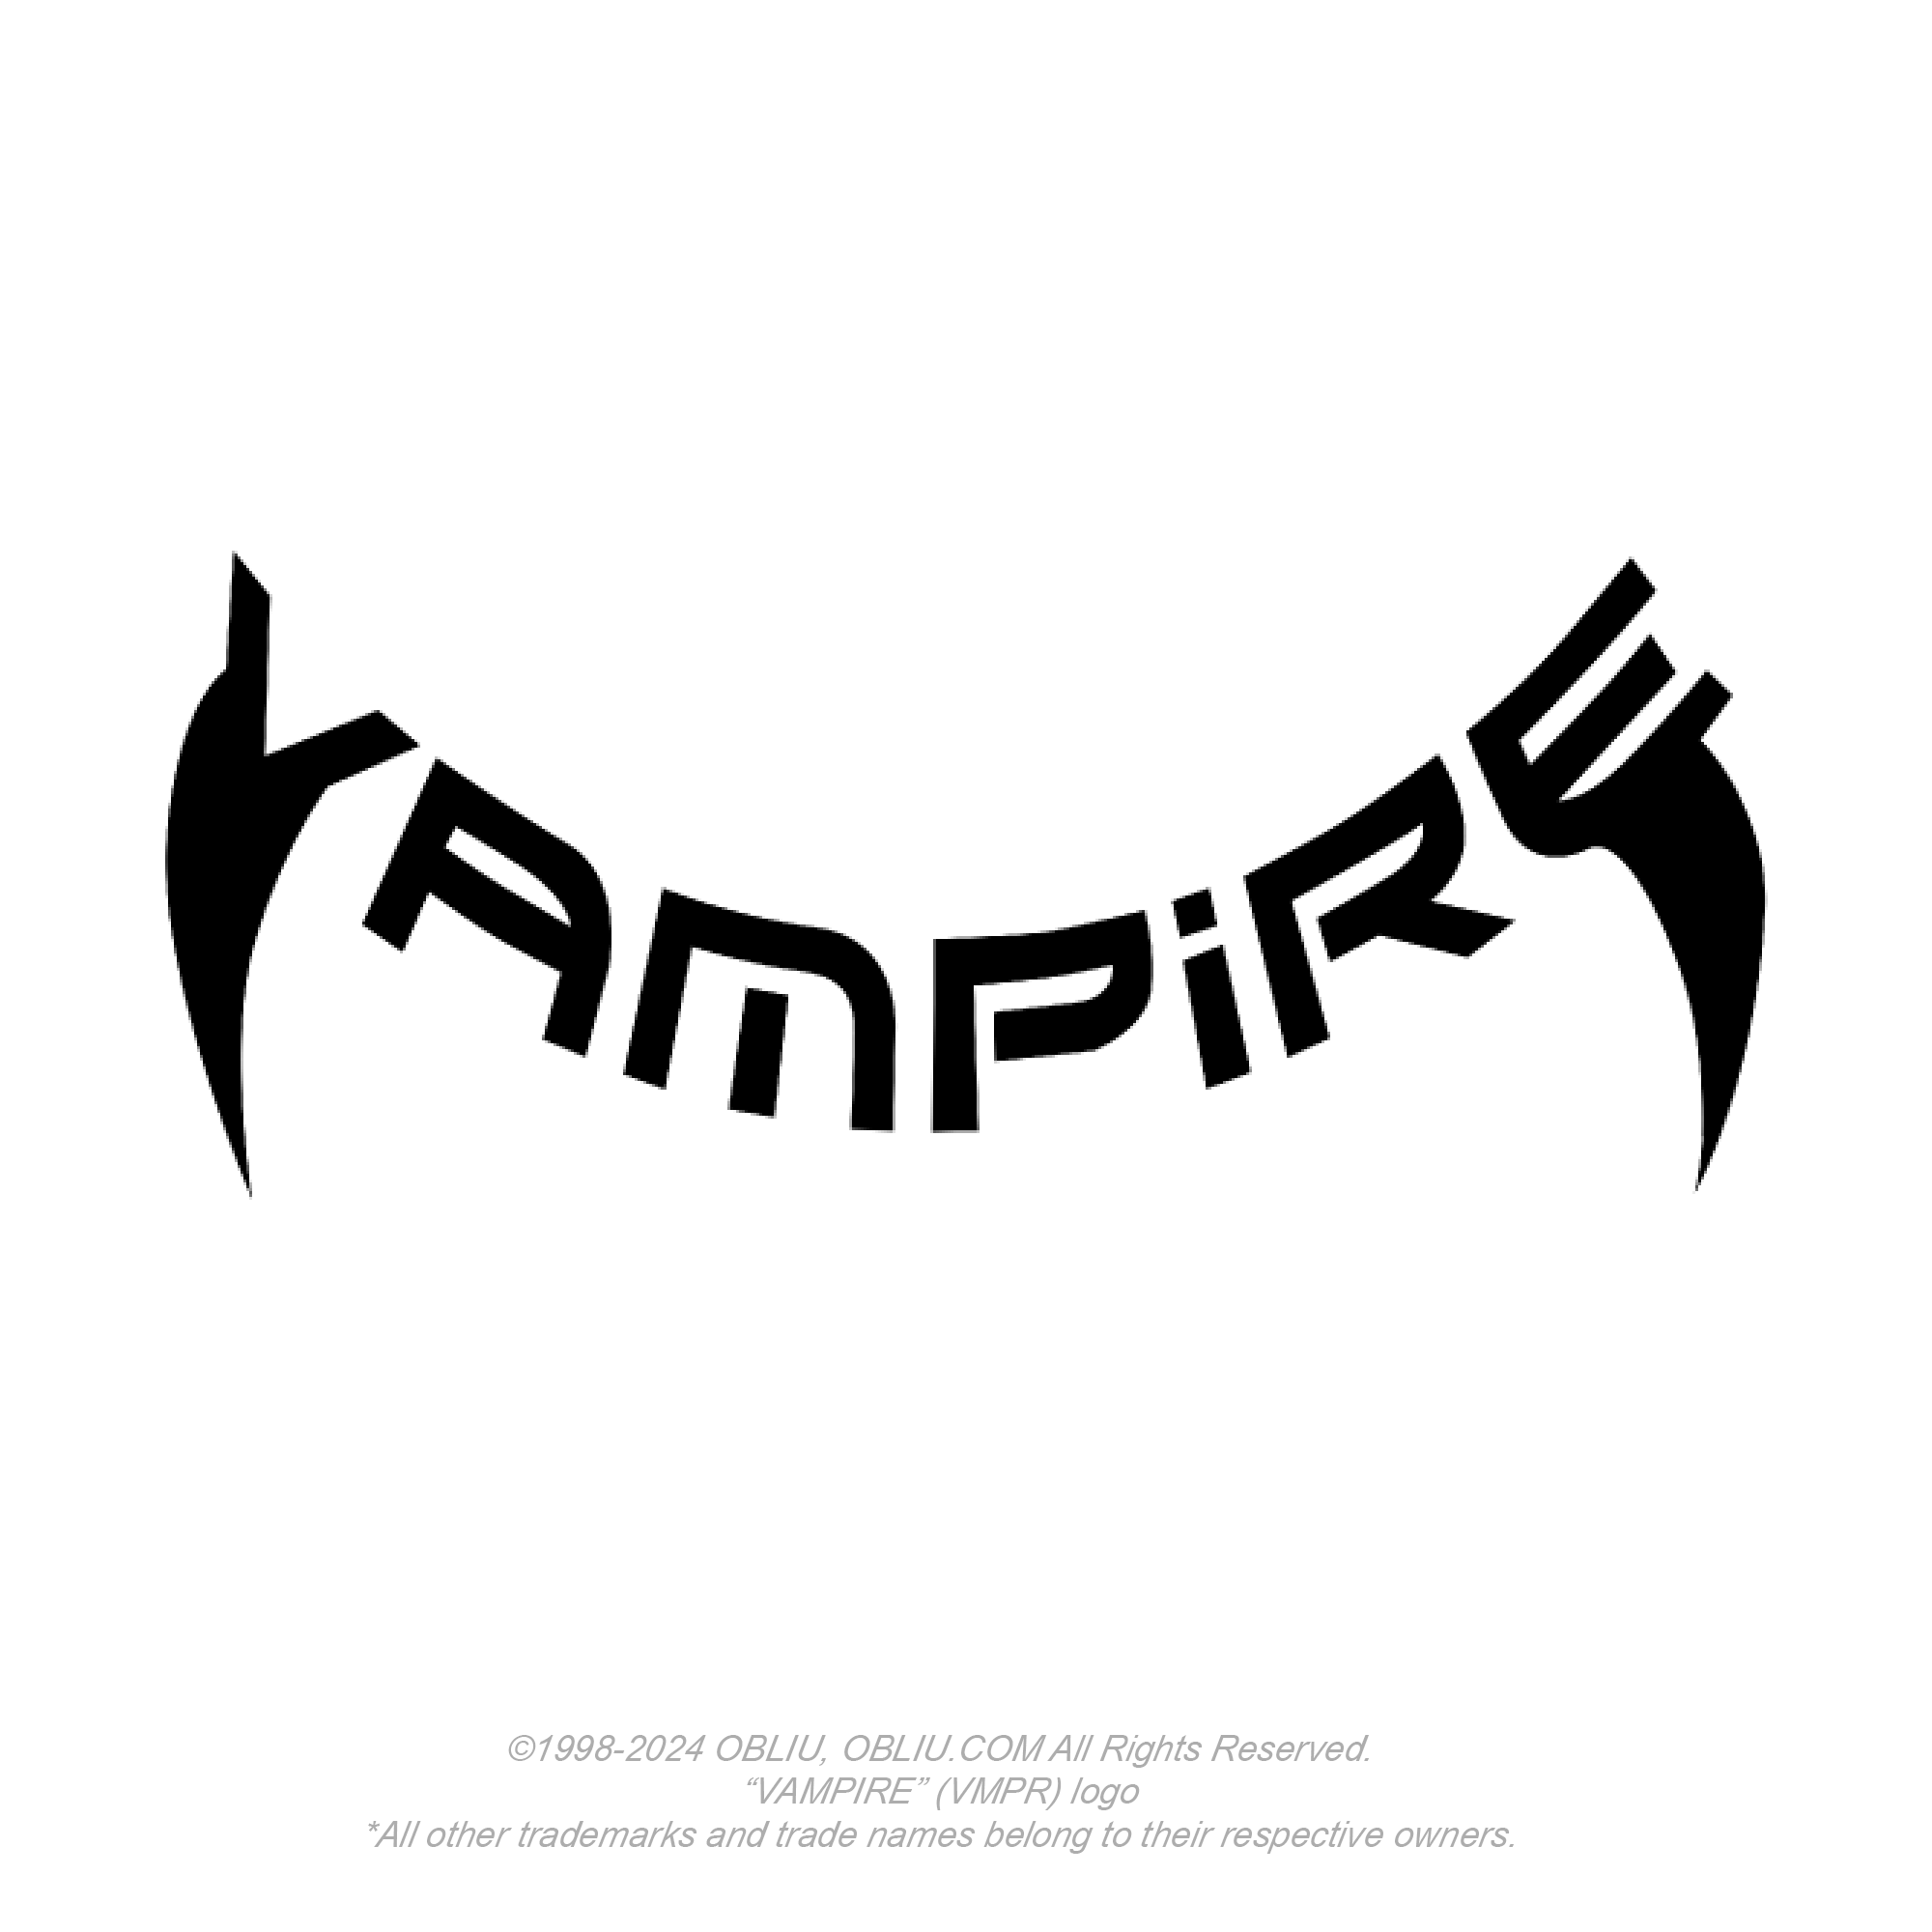 VAMPIRE "VMPR" LOGO (2020)